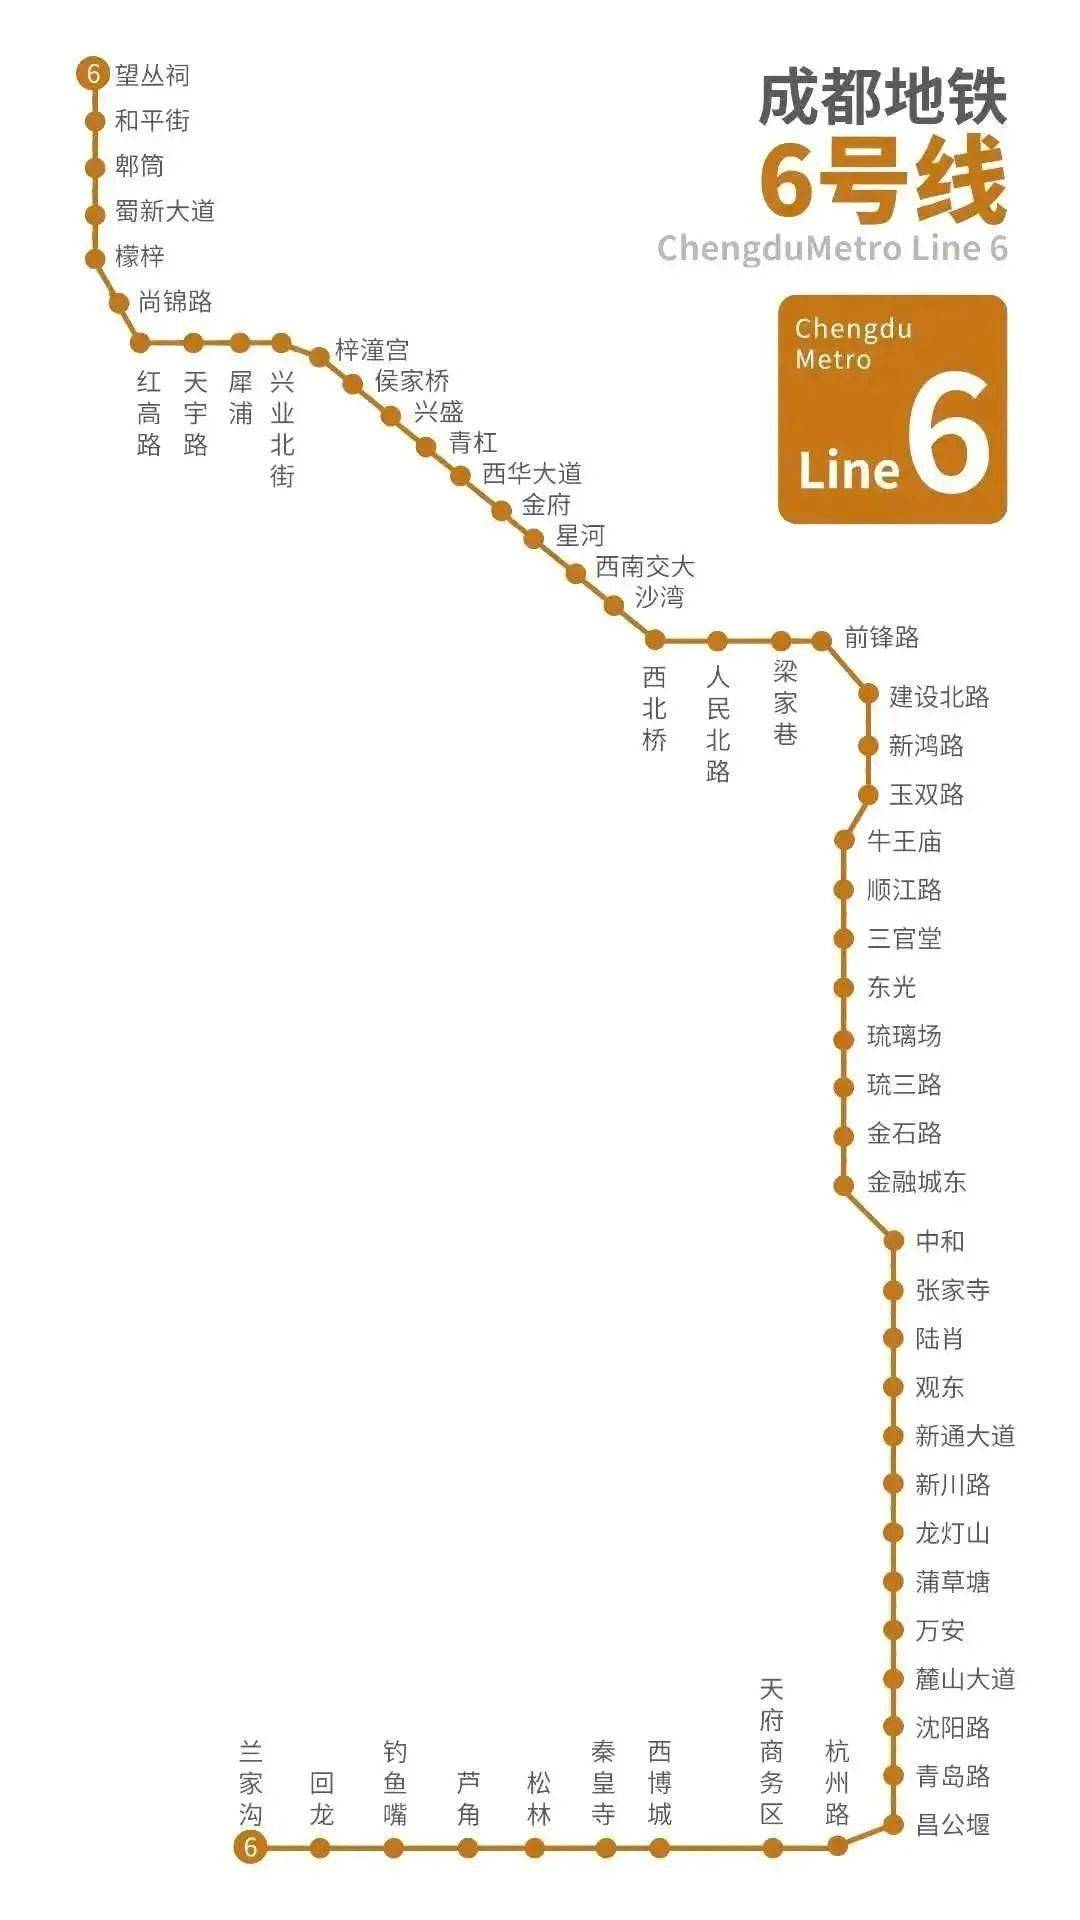 成都地铁6号线,8号线,最新进展